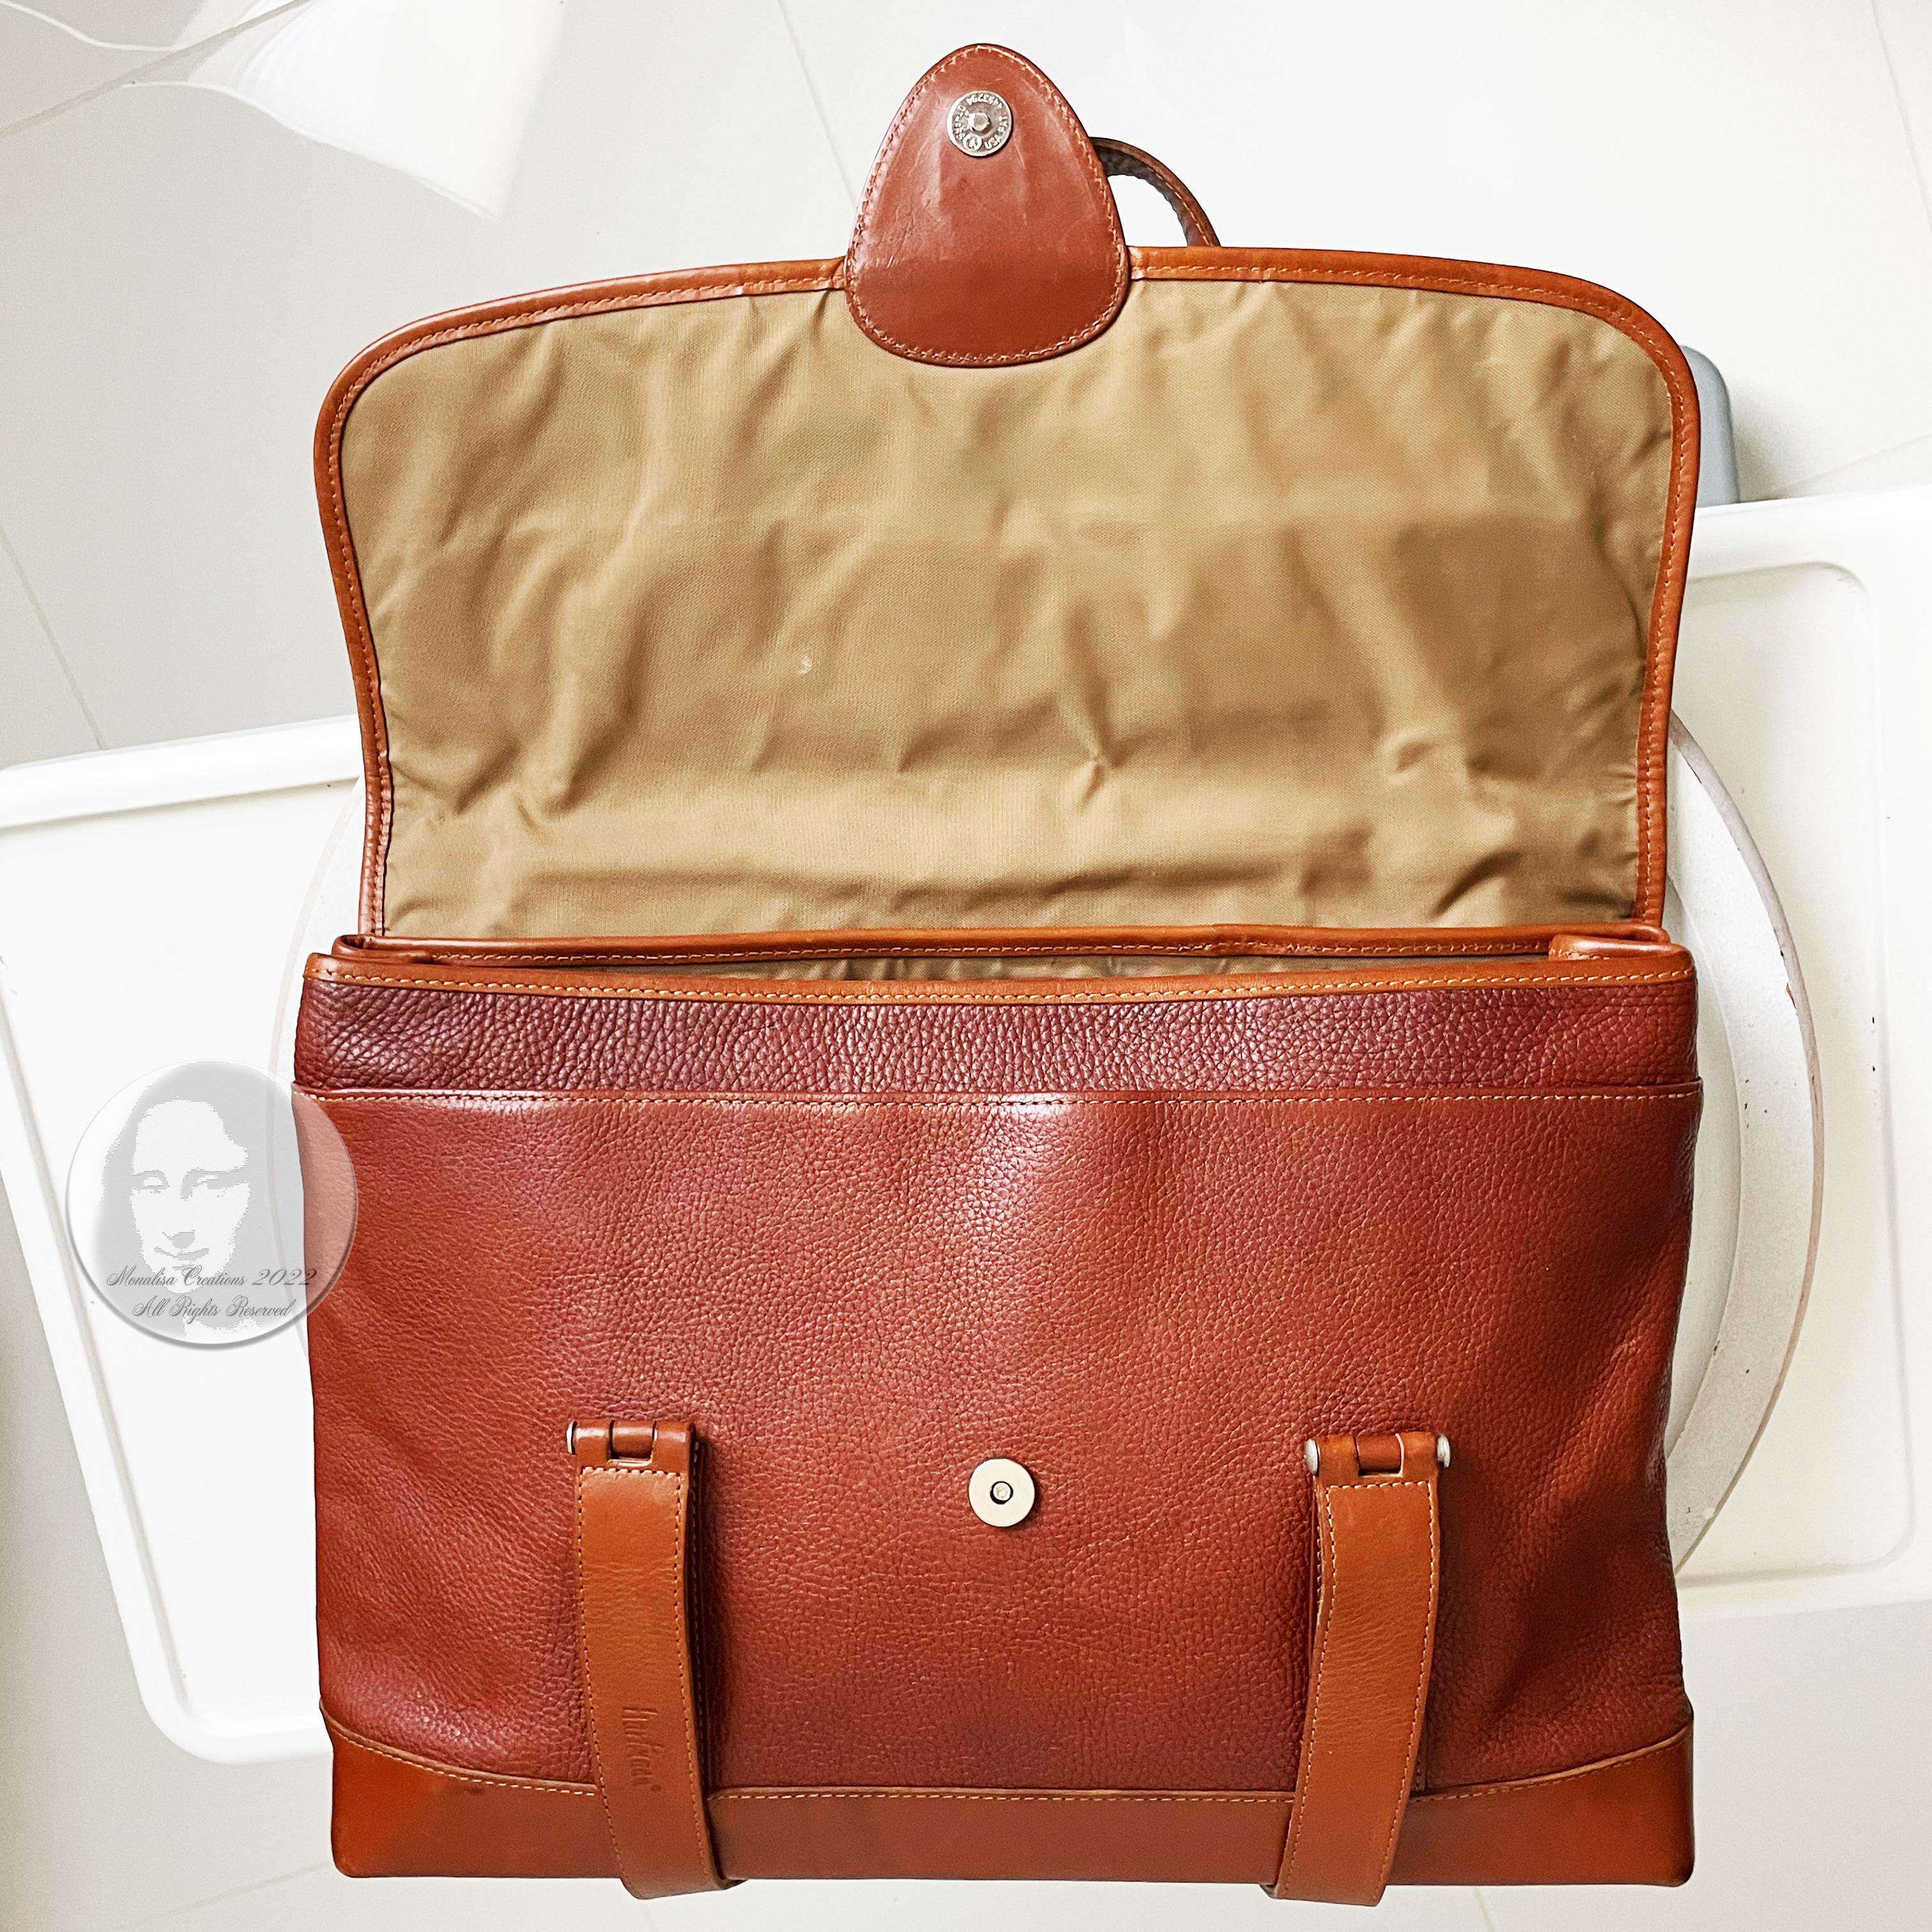 Hartmann Business Bag Briefcase Computer or Shoulder Bag British Tan Leather 7